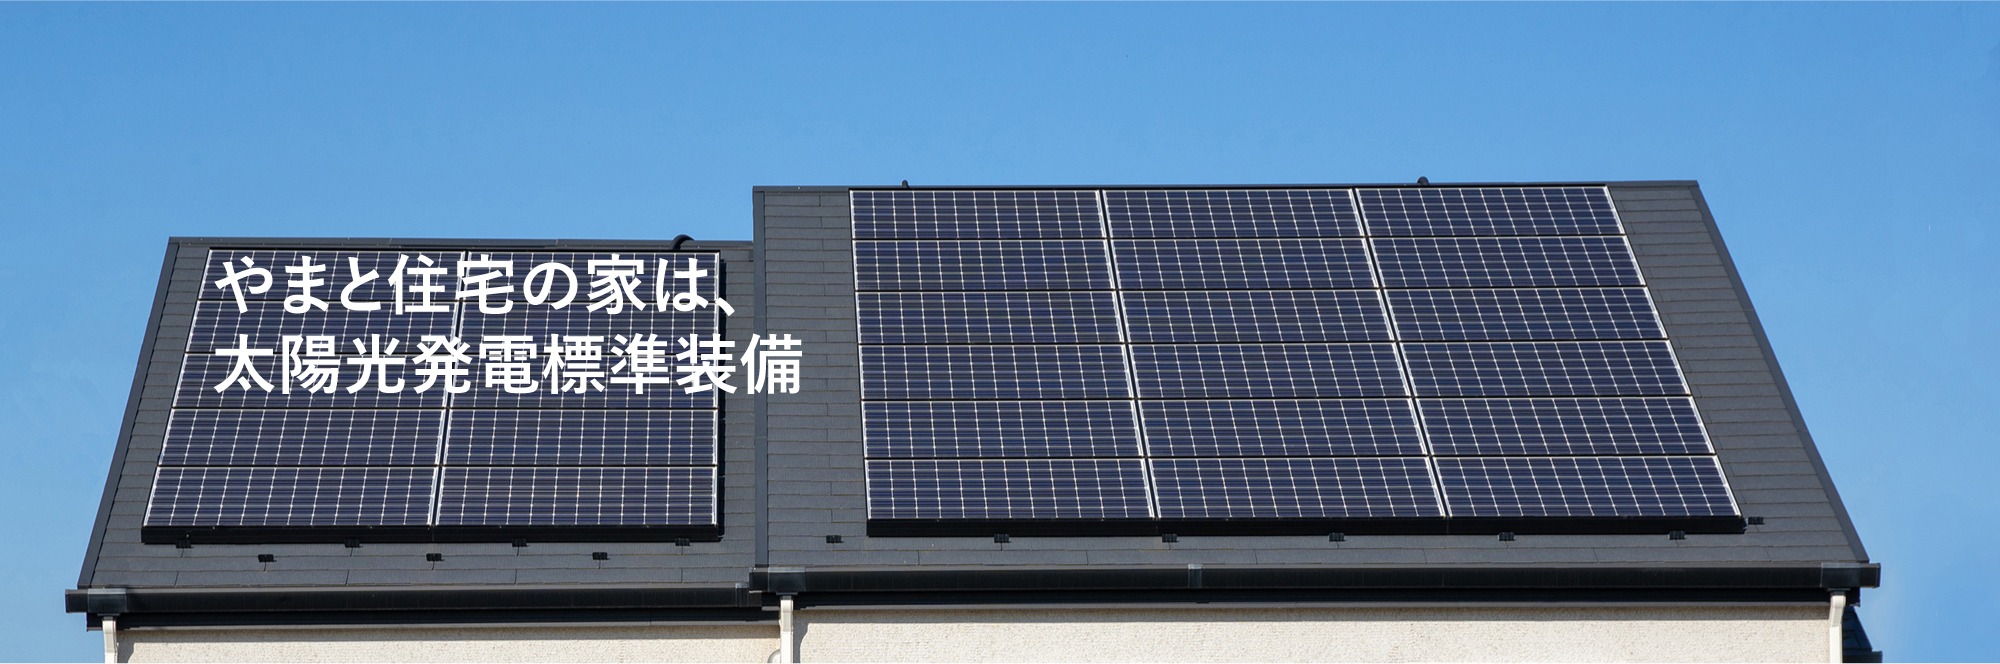 やまと住宅の家は、太陽光発電標準装備